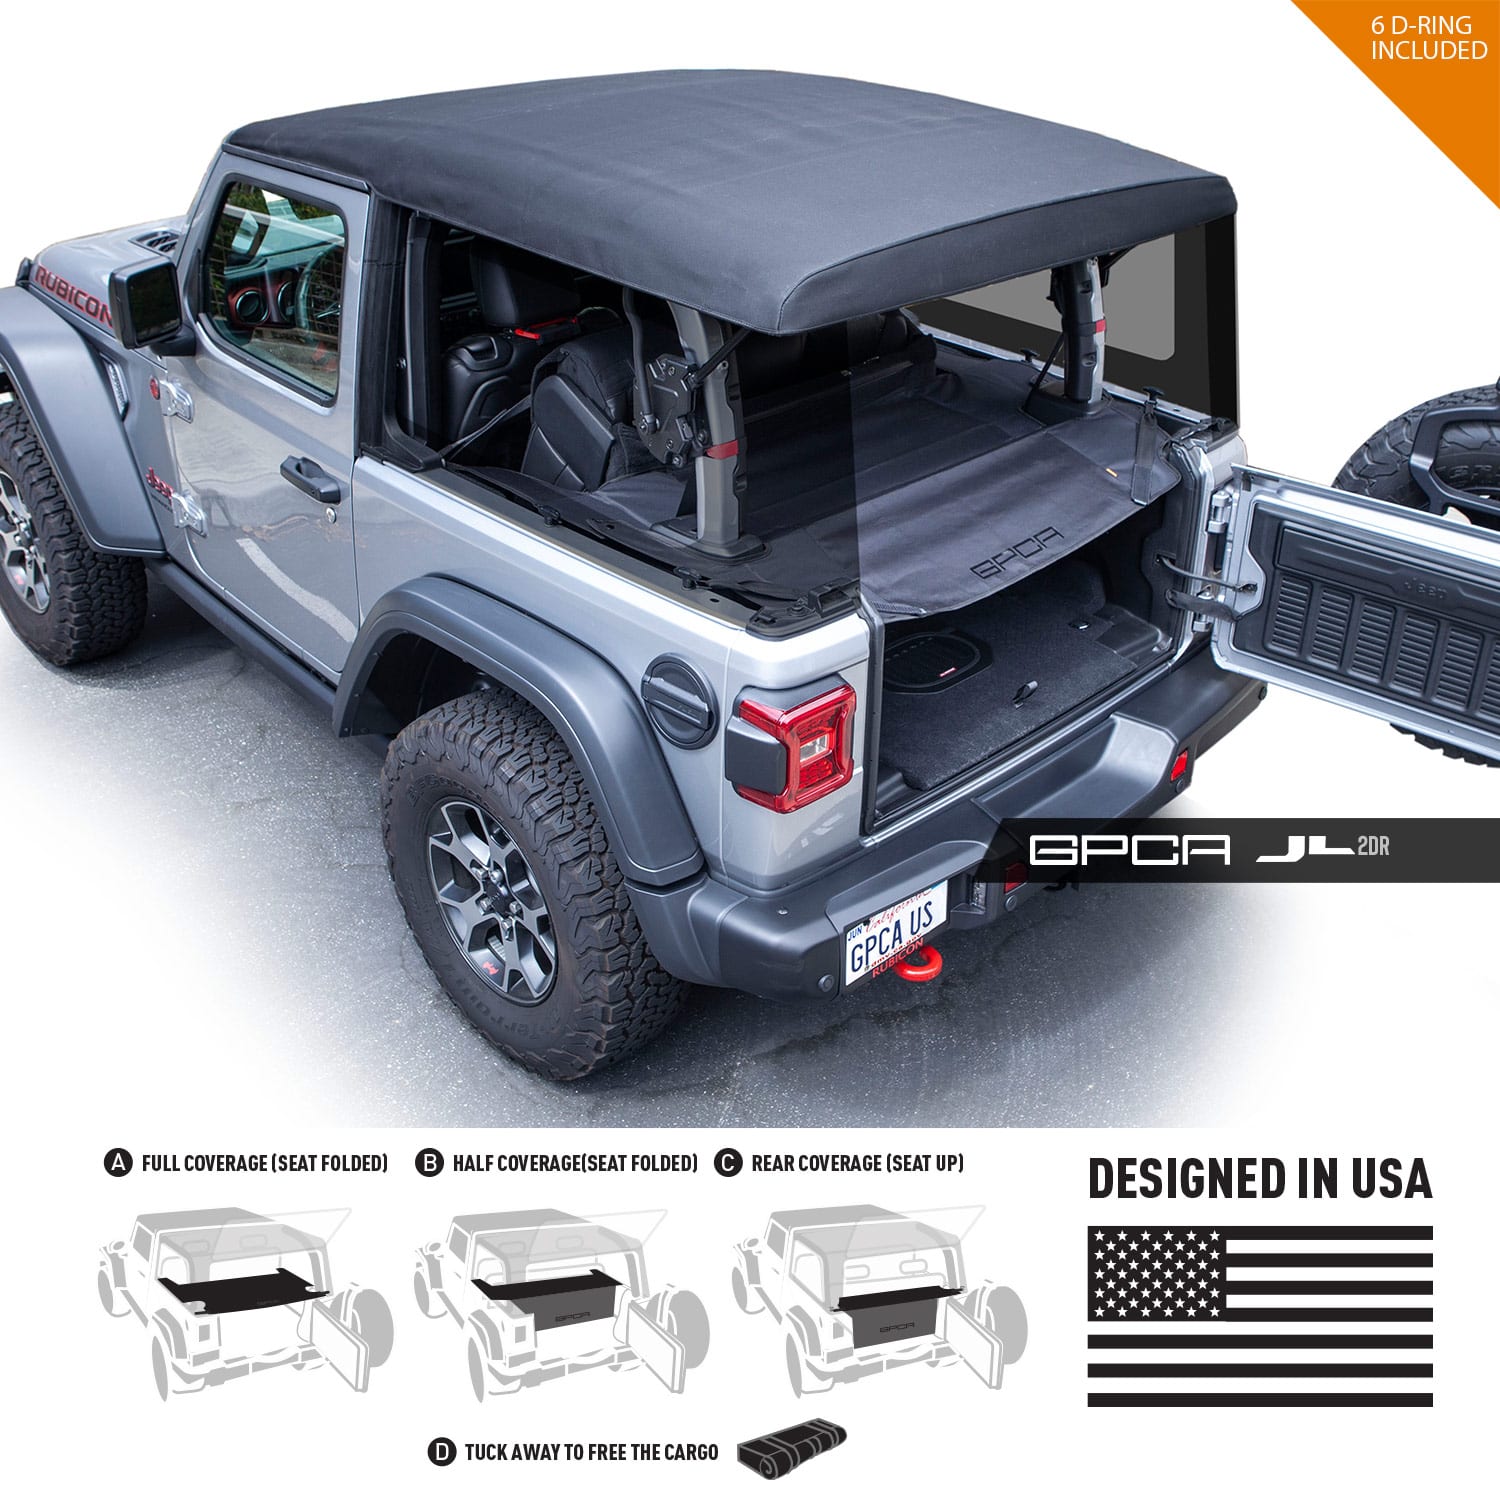 http://gpca.com/cdn/shop/products/GPCA-Jeep-wrangler-JL-cargo-cover-2DR-2.jpg?v=1681729706